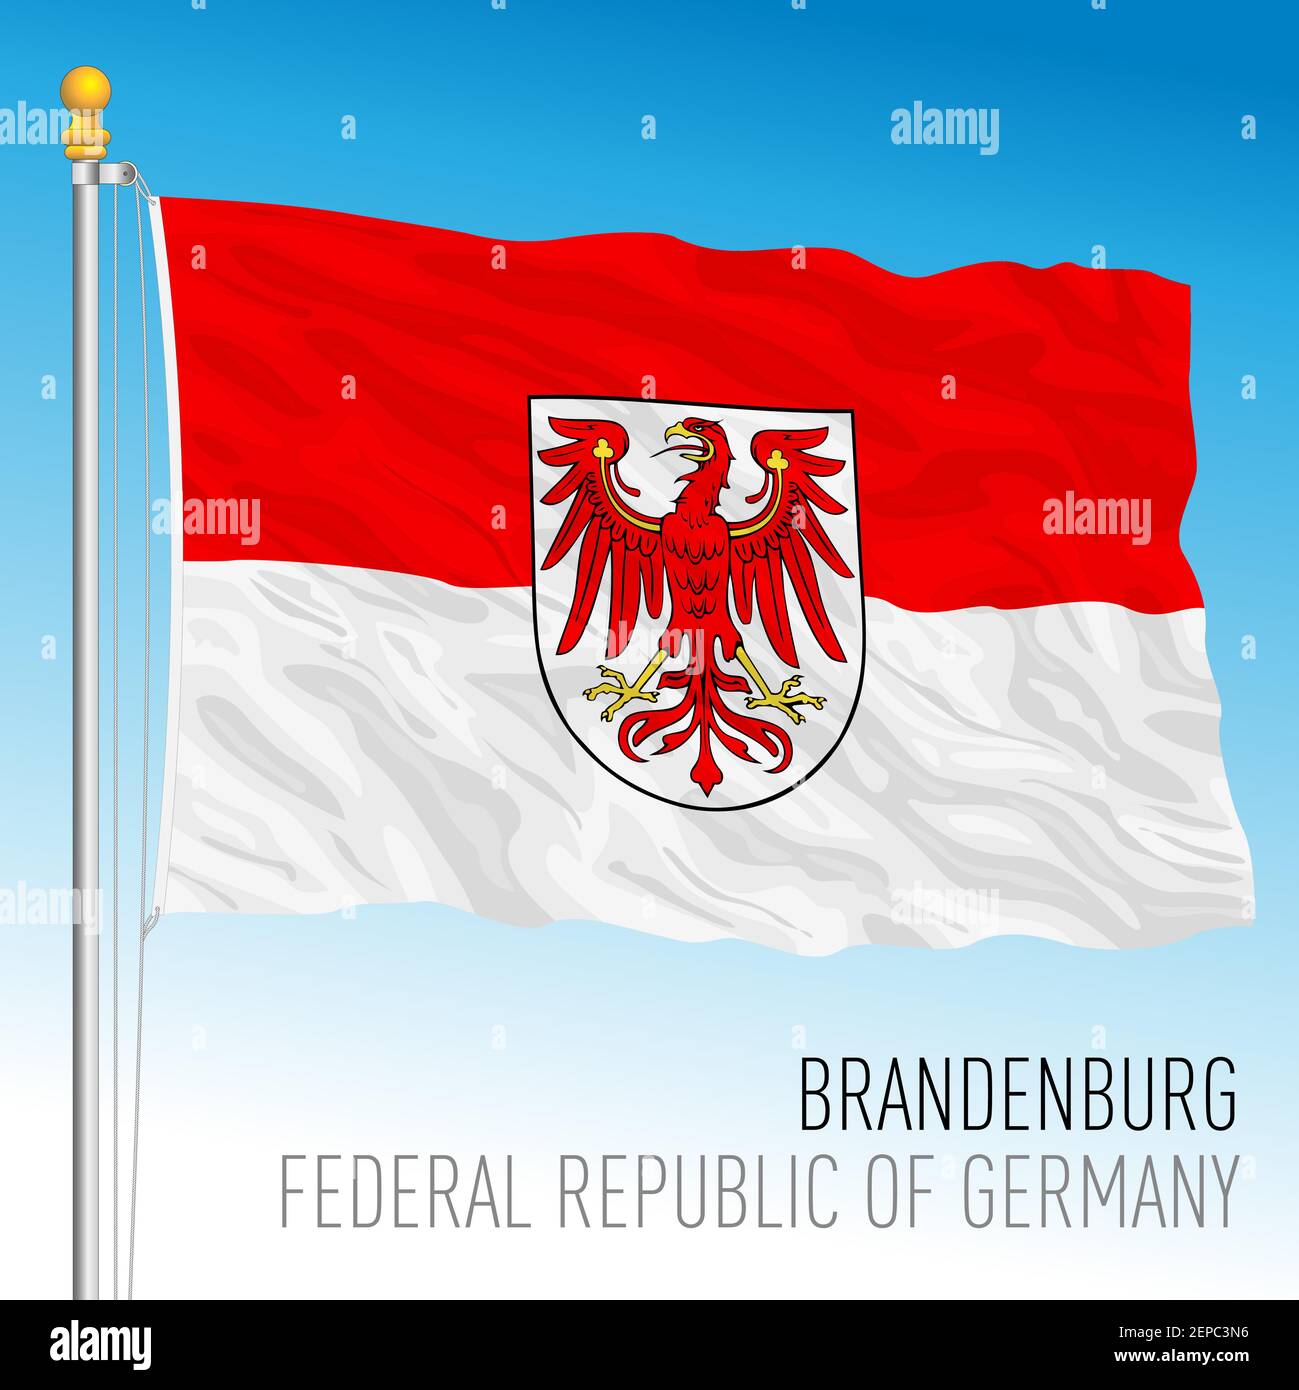 Brandenburg lander flag, federal state of Germany, europe, vector